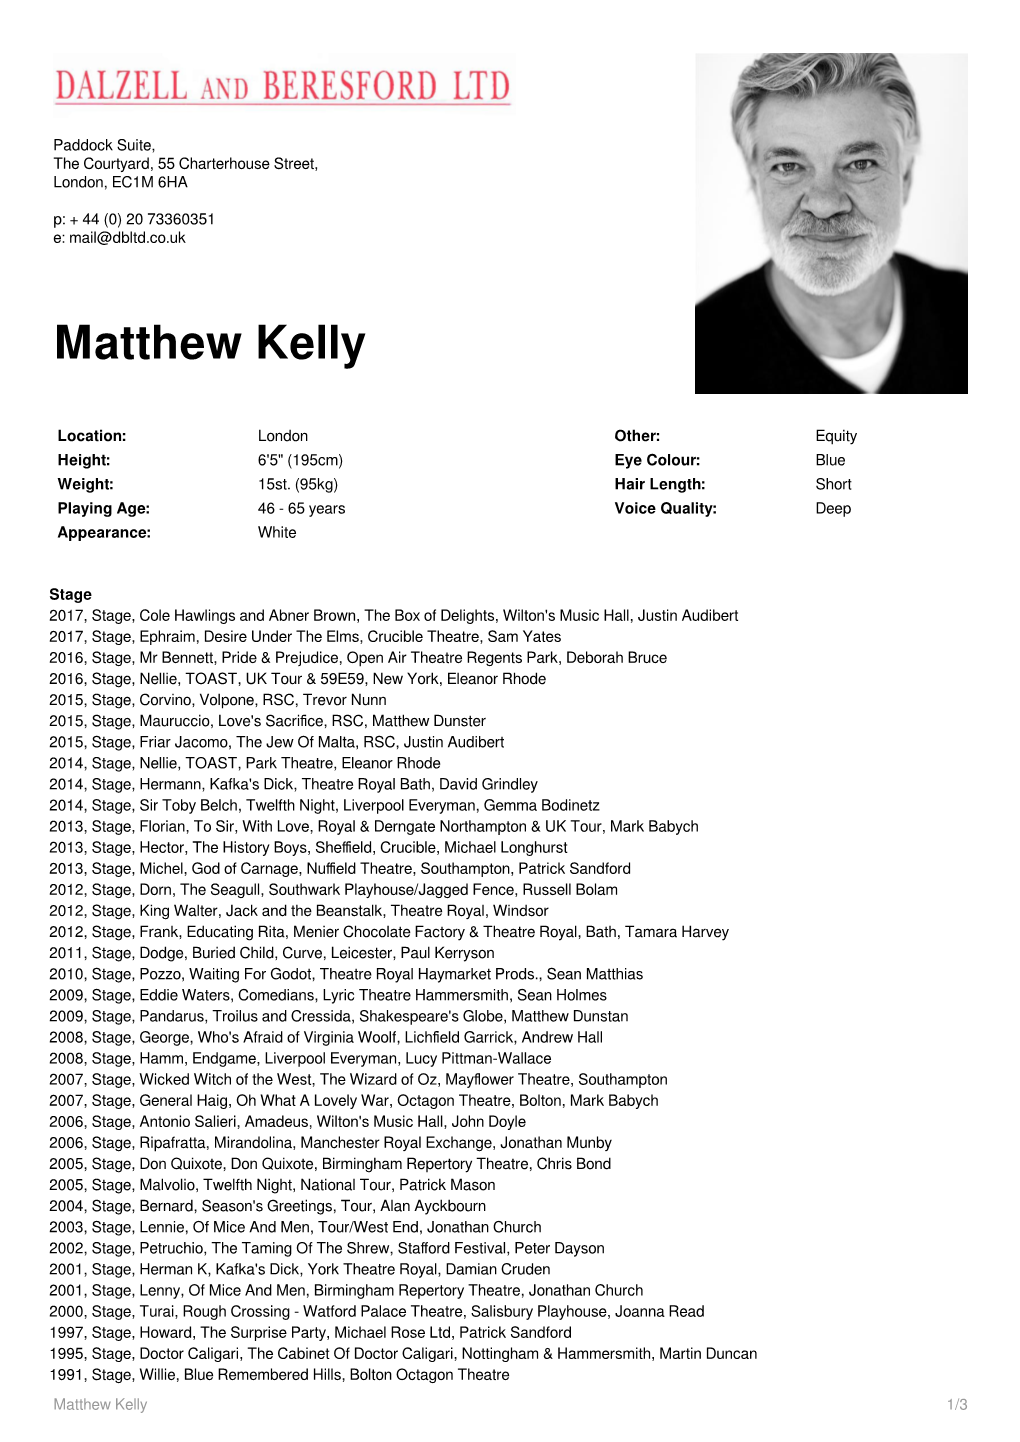 Matthew Kelly